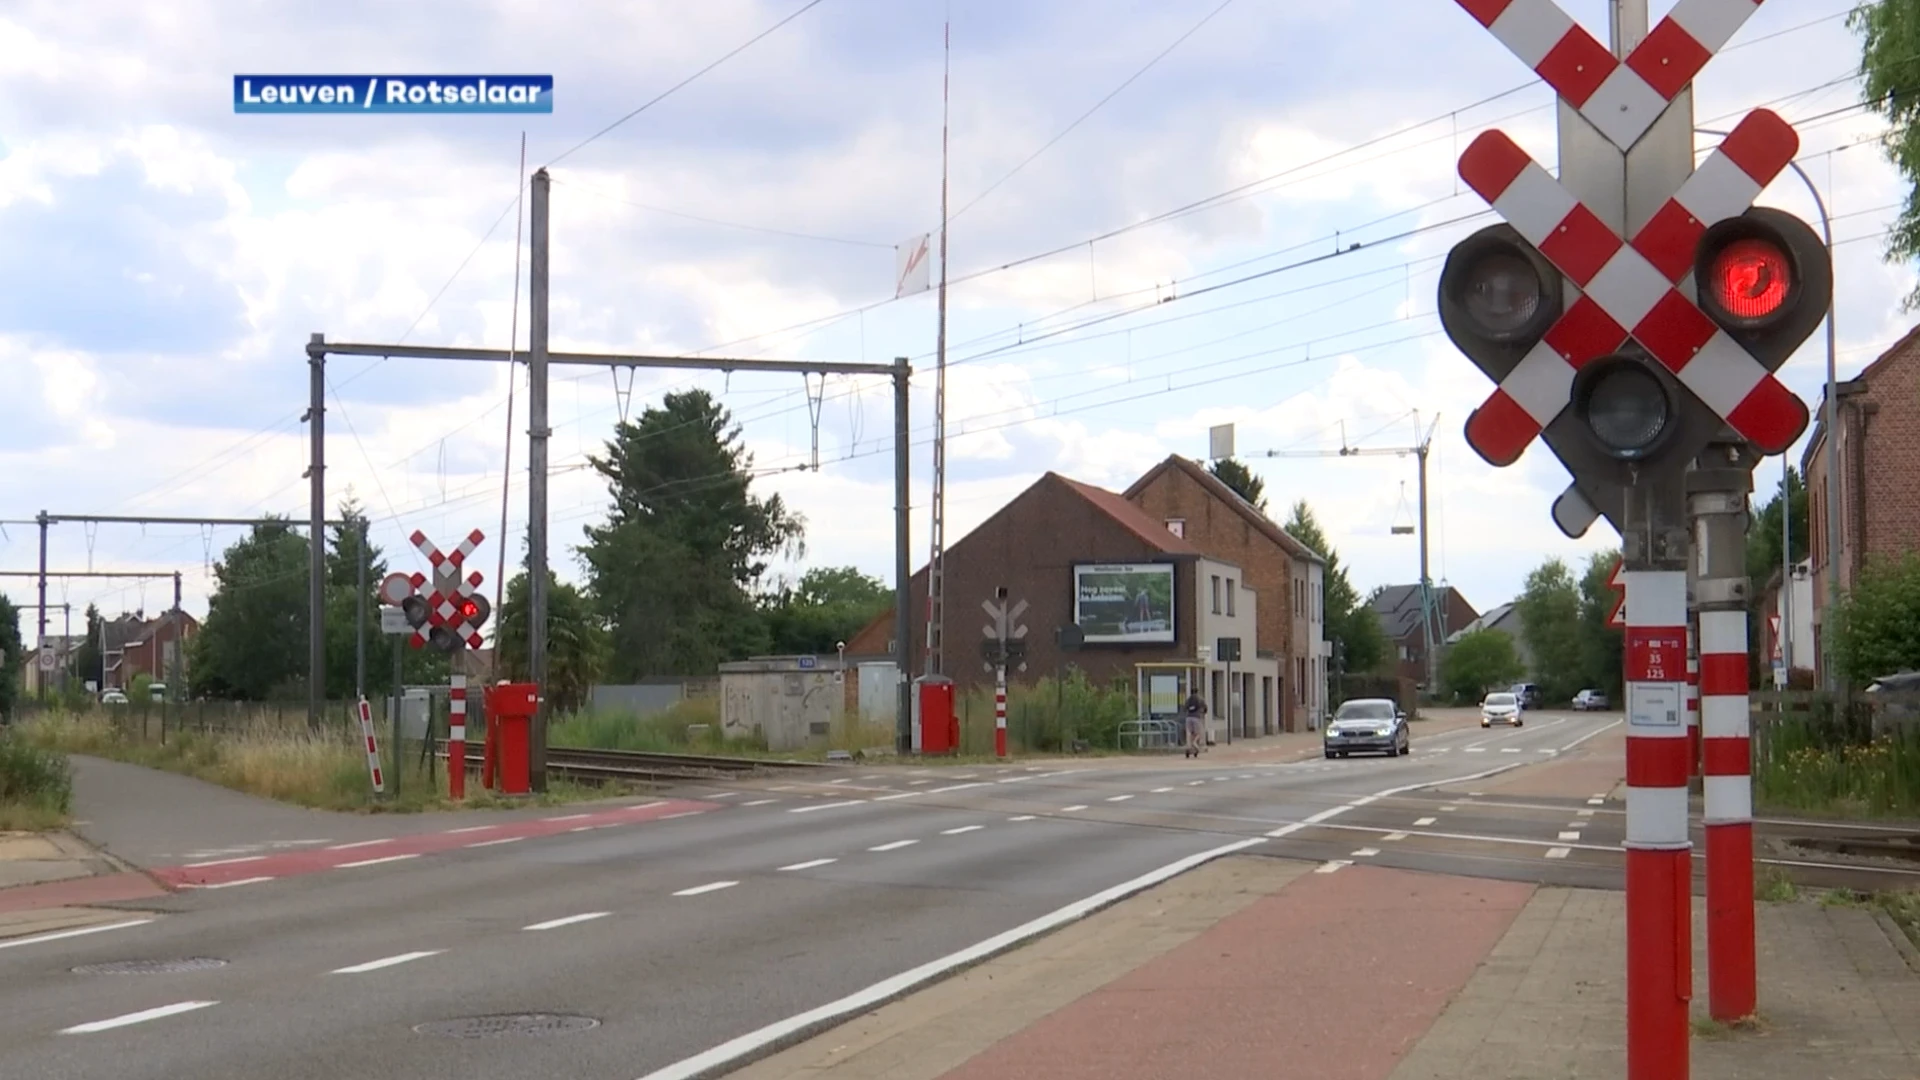 100 incidenten aan spoorwegovergangen tussen Wezemaal en Leuven in 8 jaar tijd: "Ondertunneling is de oplossing"